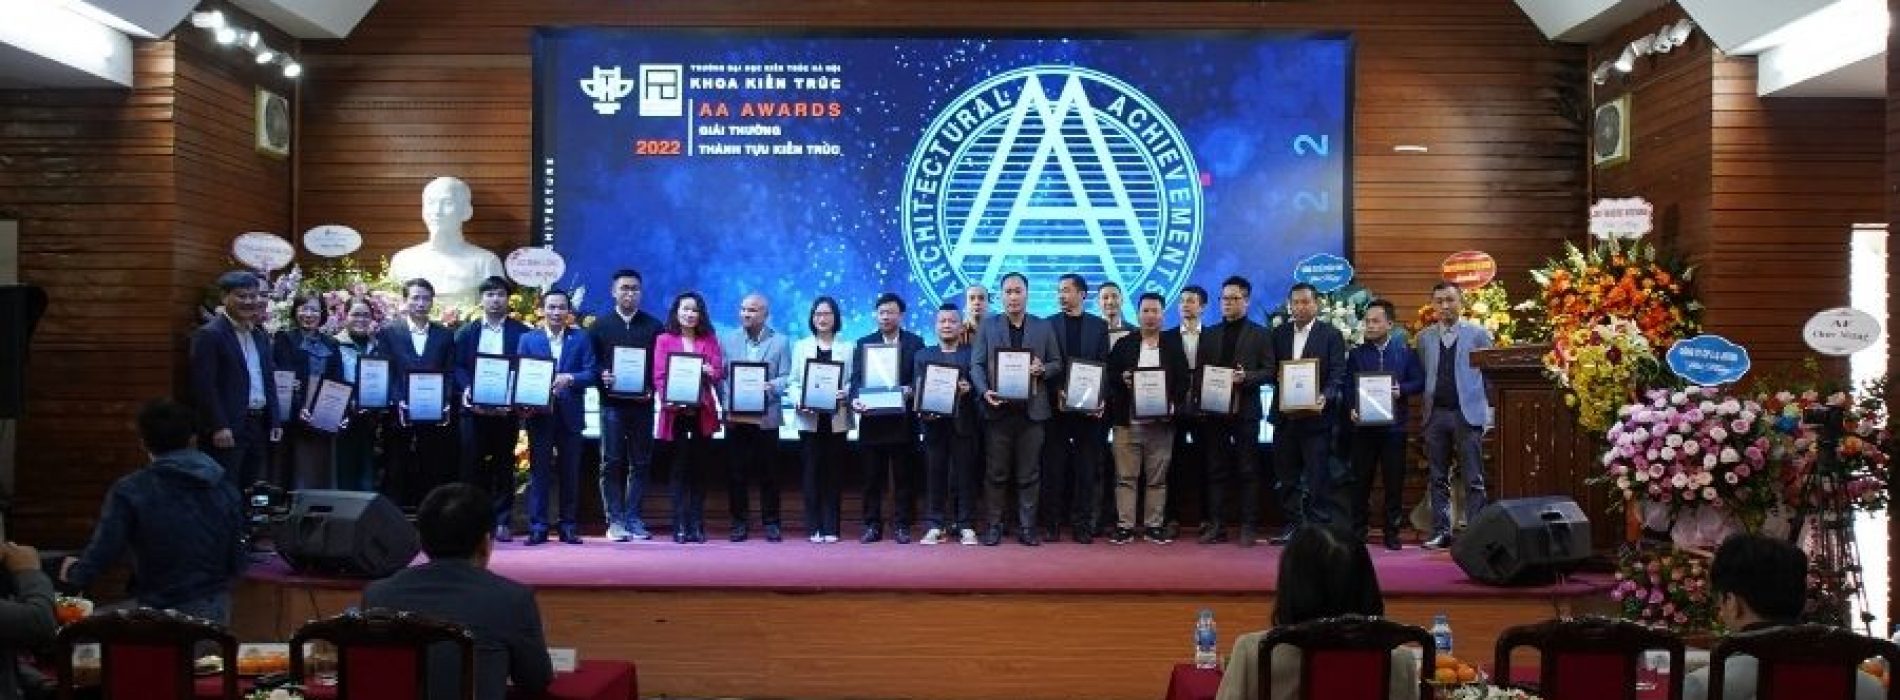 LIXIL Talent Match tiếp tục đồng hành cùng Trường Đại học Kiến trúc Hà Nội trong Lễ trao giải AA Awards và Chương trình giới thiệu LIXIL Talent Macth A&D Internship